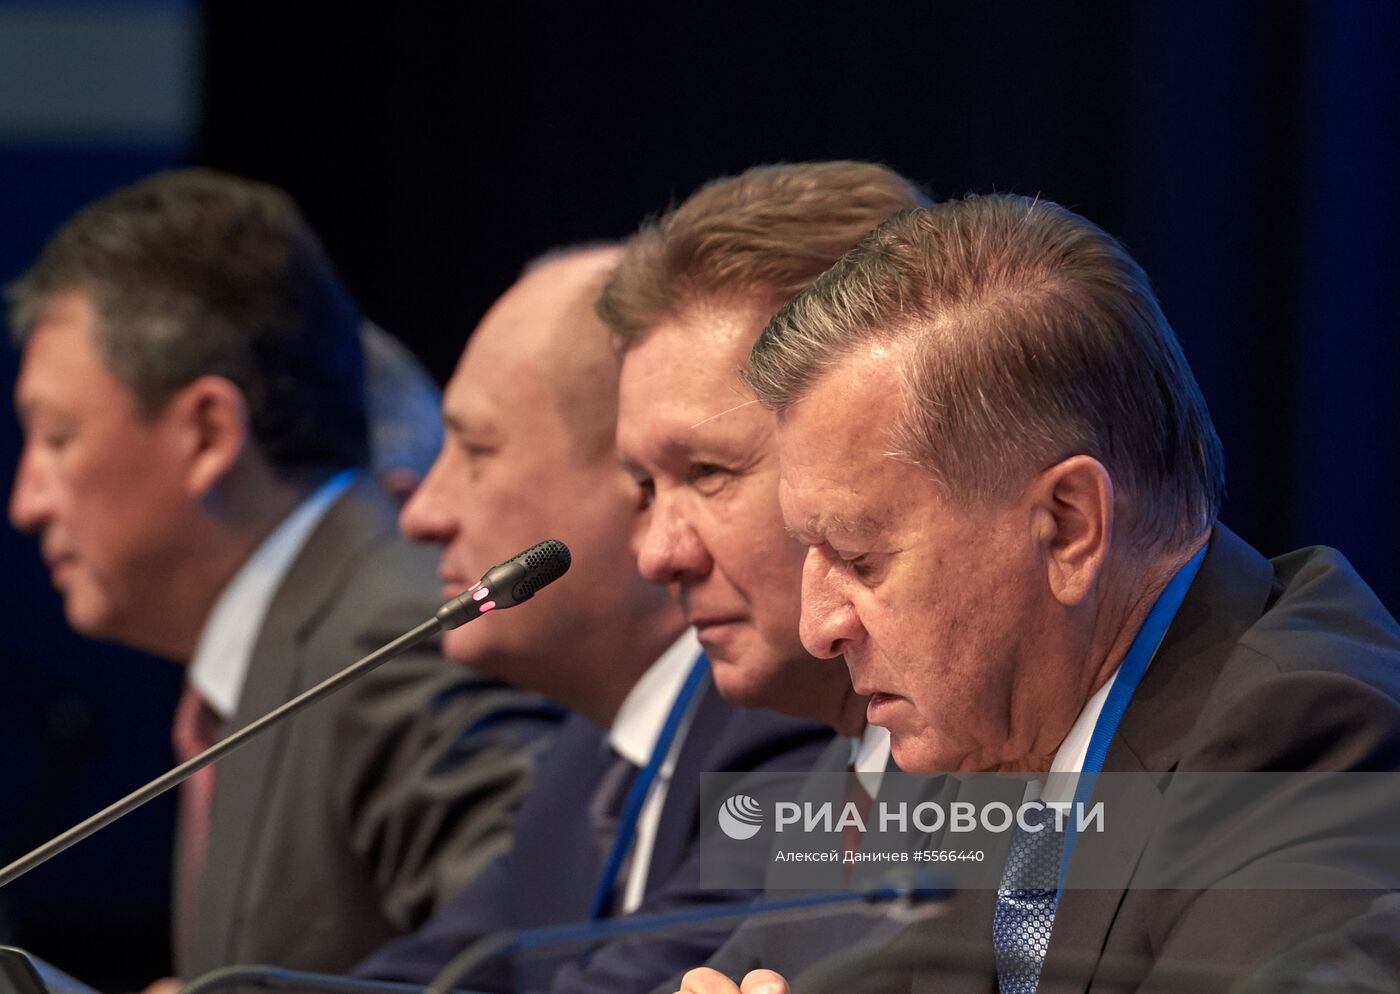 Годовое собрание акционеров ПАО "Газпром" в Санкт-Петербурге